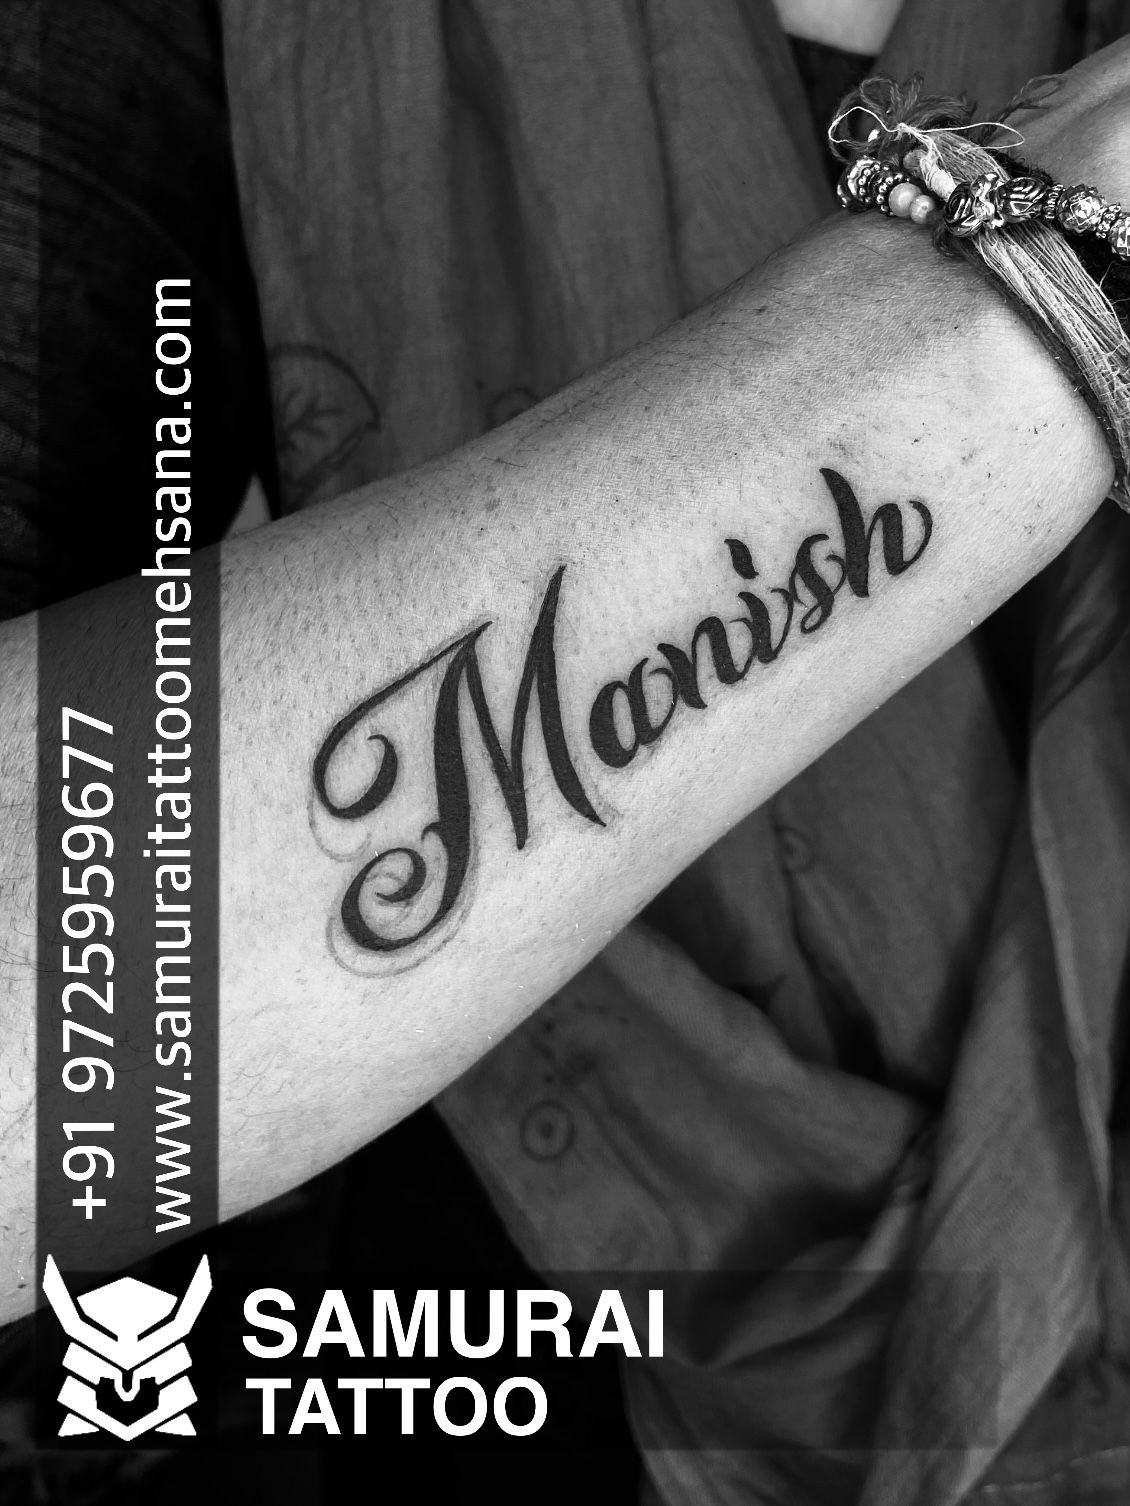 nirjala p ghawat on X tattoo nametattoo Angelstattoostudionanded  nandedkar handtattoo httpstco7A7tqivOzD  X